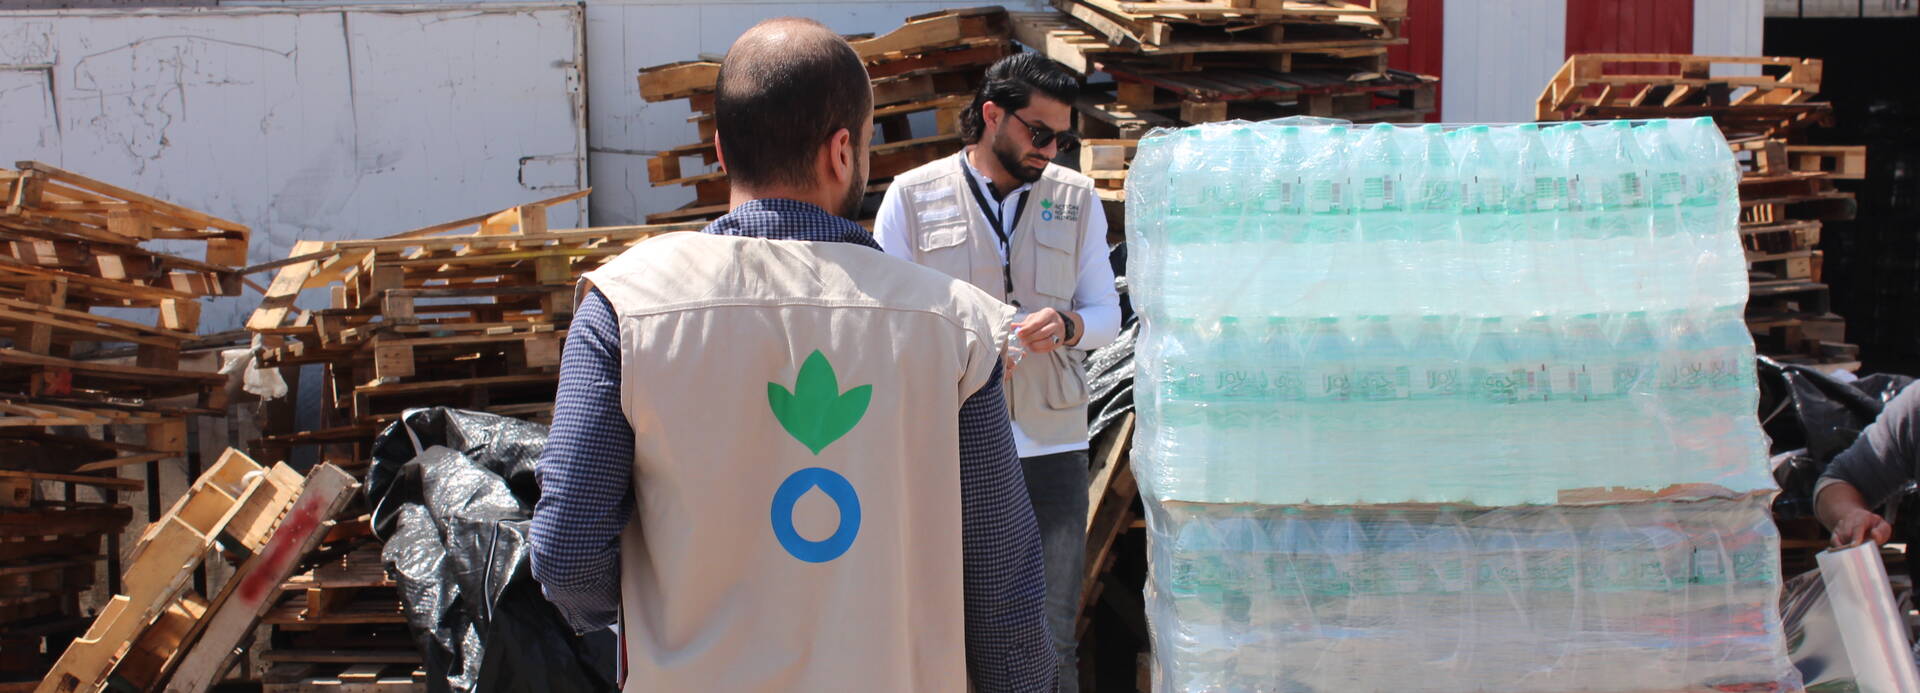 Aktion gegen den Hunger verteilt sauberes Wasser zur Eindämmung von COVID-19 in Gaza.